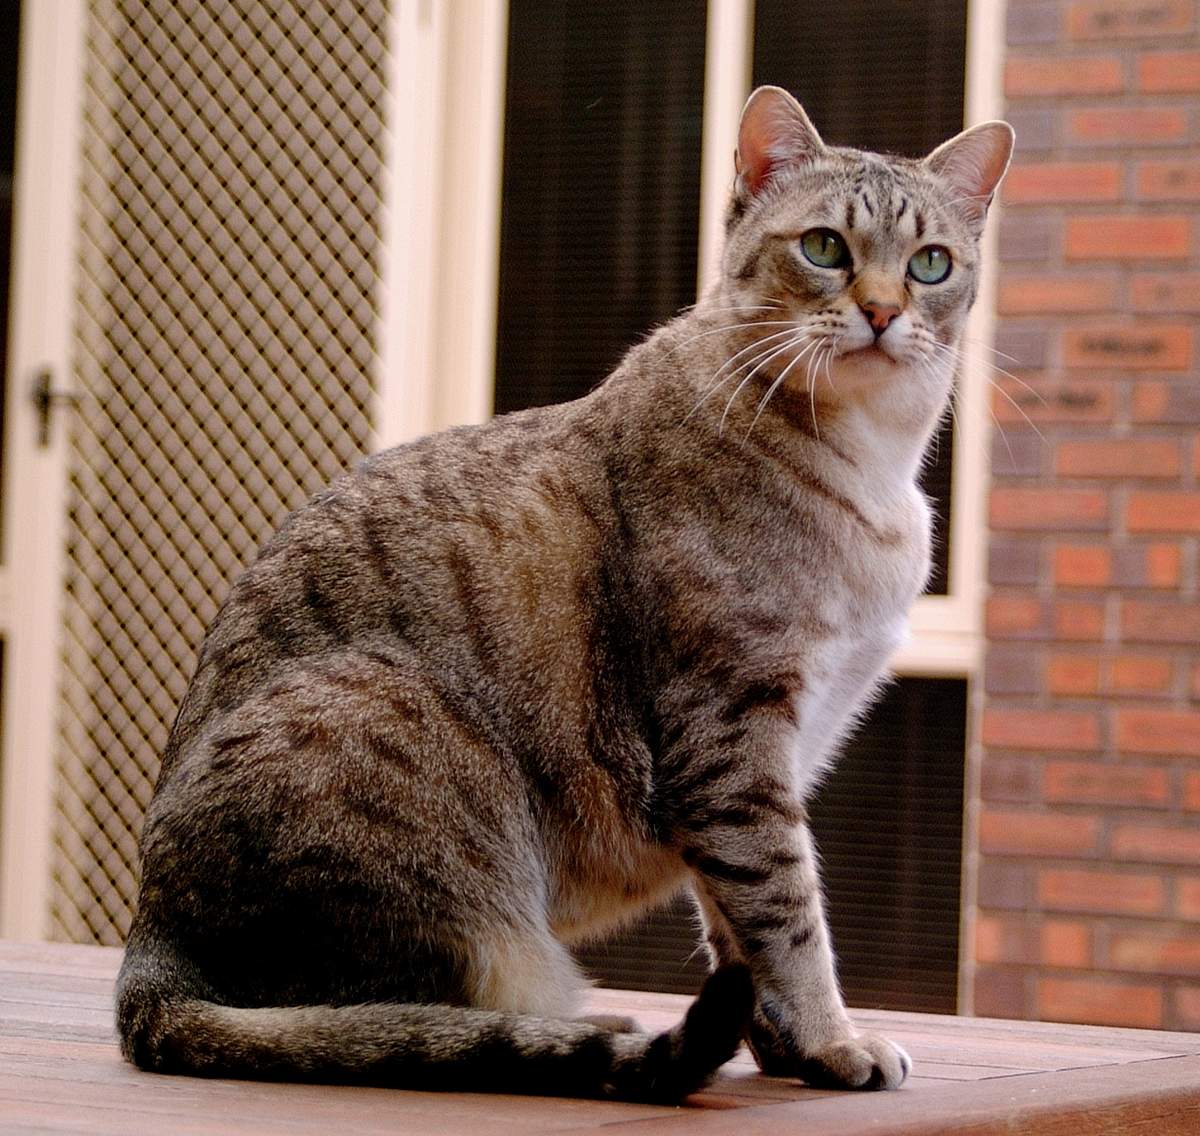 Китайская кошка: описание породы, характер, советы по содержанию и уходу, фото